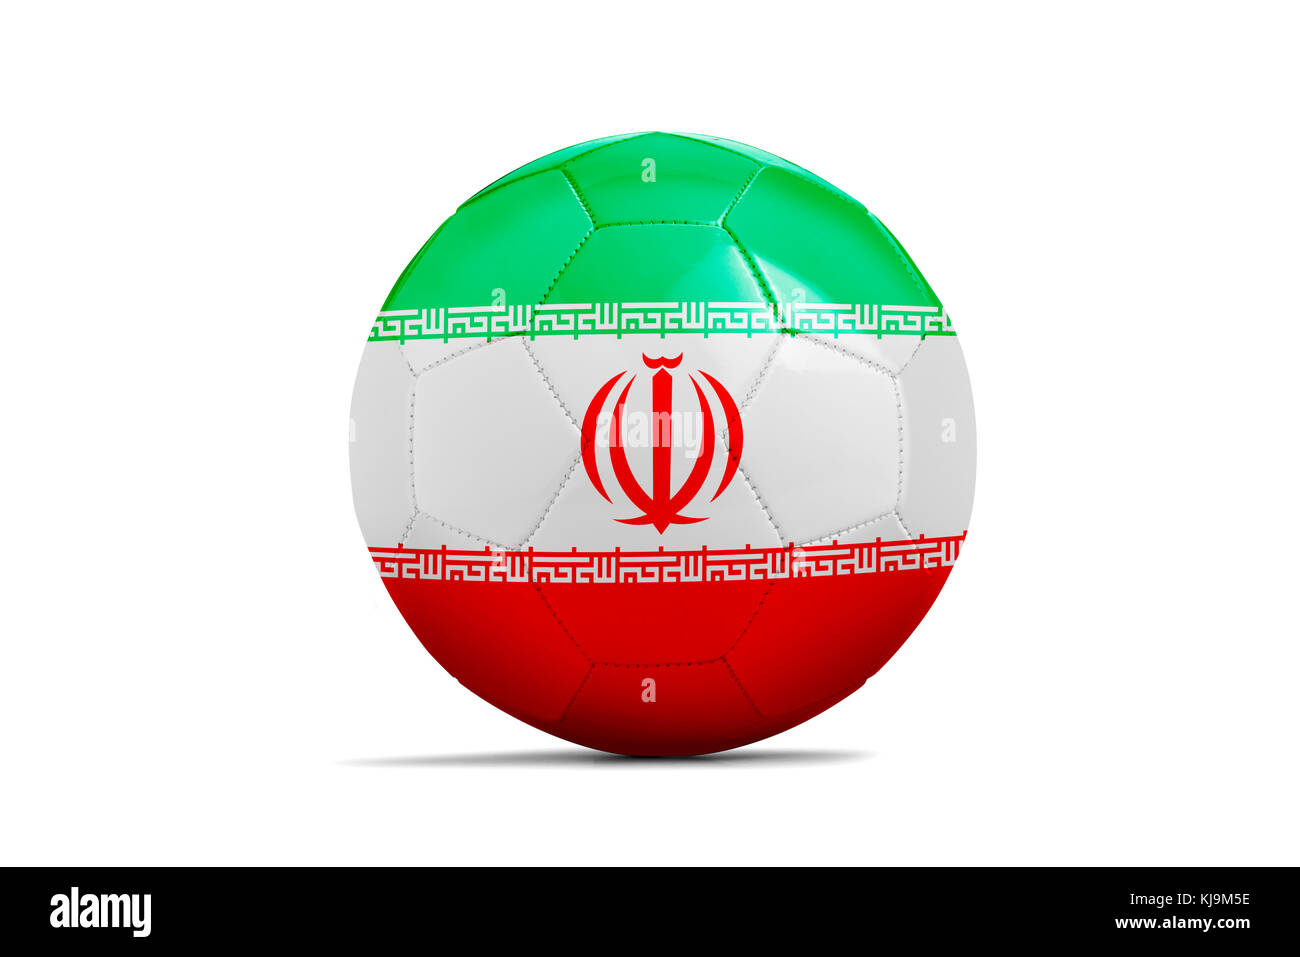 Pelota de fútbol con la bandera del equipo aislado, Rusia 2018 Irán. Foto de stock